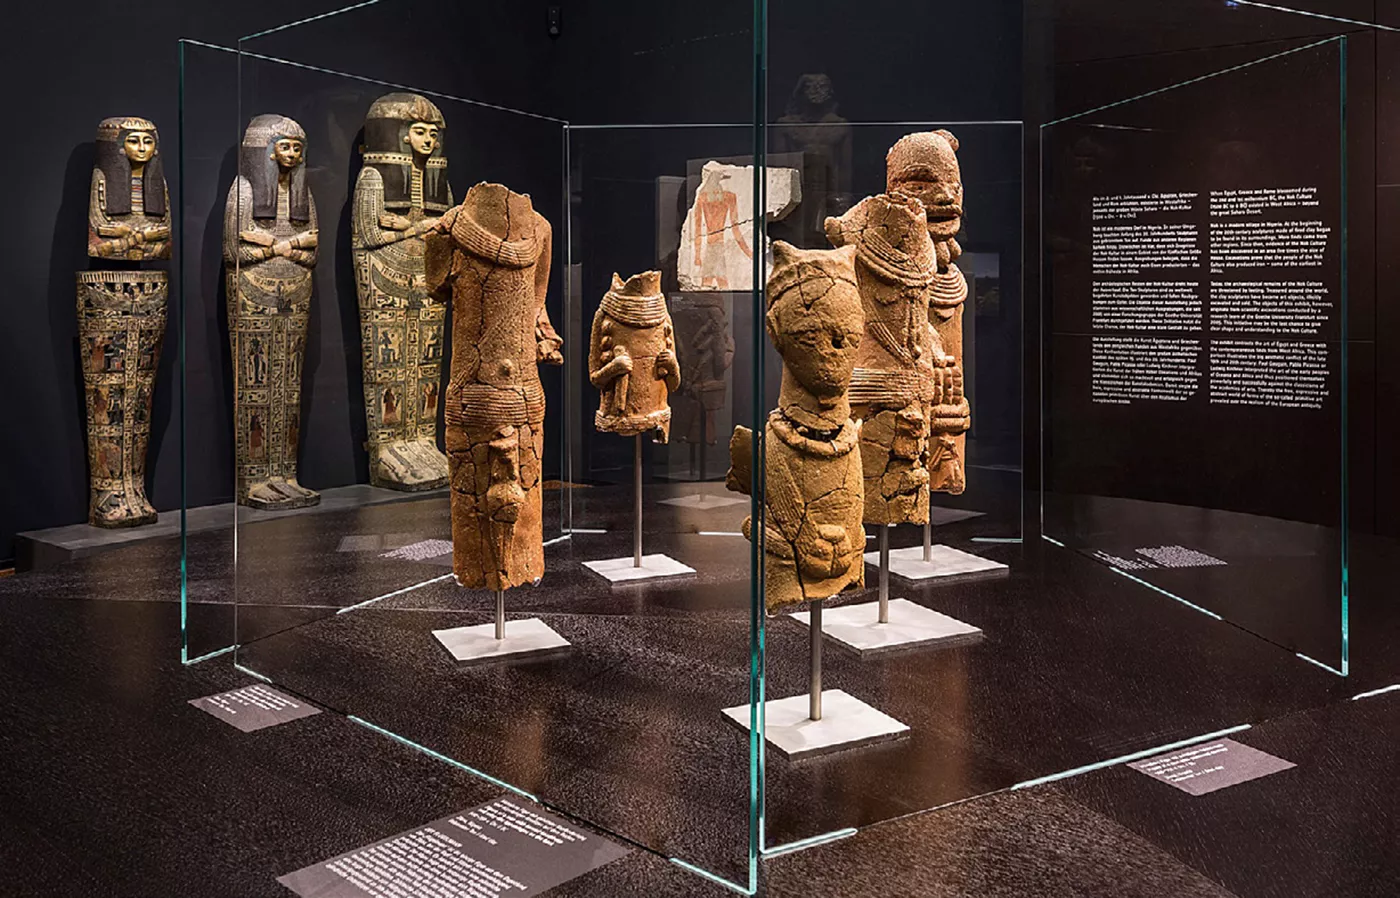 L’antiguitat de la cultura de Nok s’ha hagut d’anar adequant amb els nous estudis: hi ha peces que daten del 500 aC, cosa que les fa contemporànies dels guerrers de Xi’an i la fa la cultura més antiga de l’Àfrica occidental